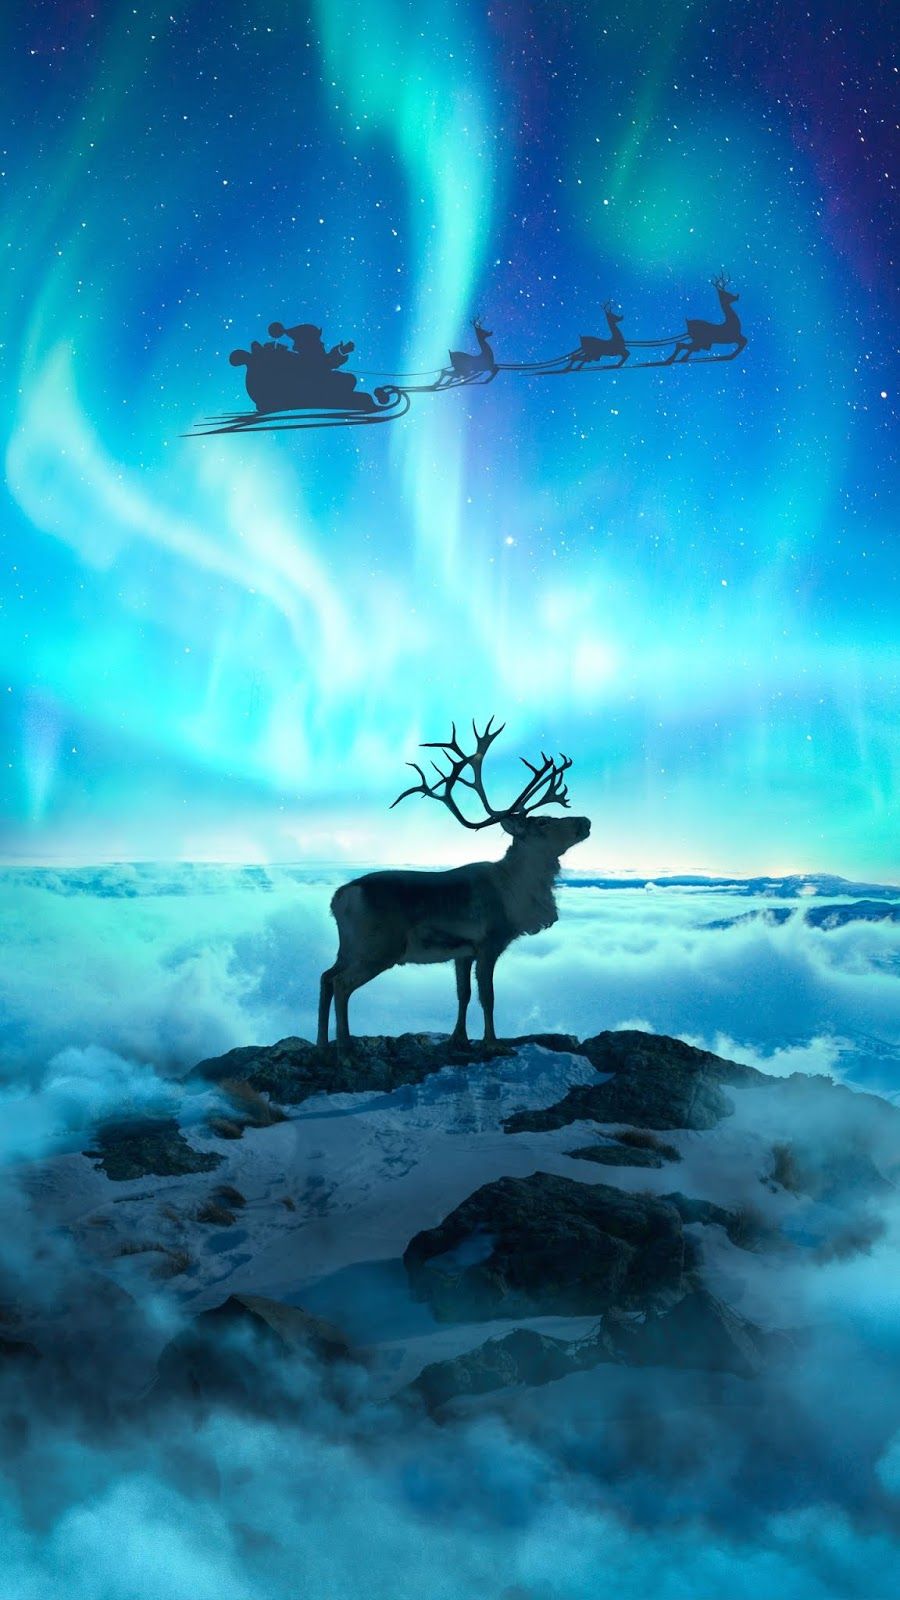 The Christmas Spirit Beautiful Wallpaper Deer Photos Best